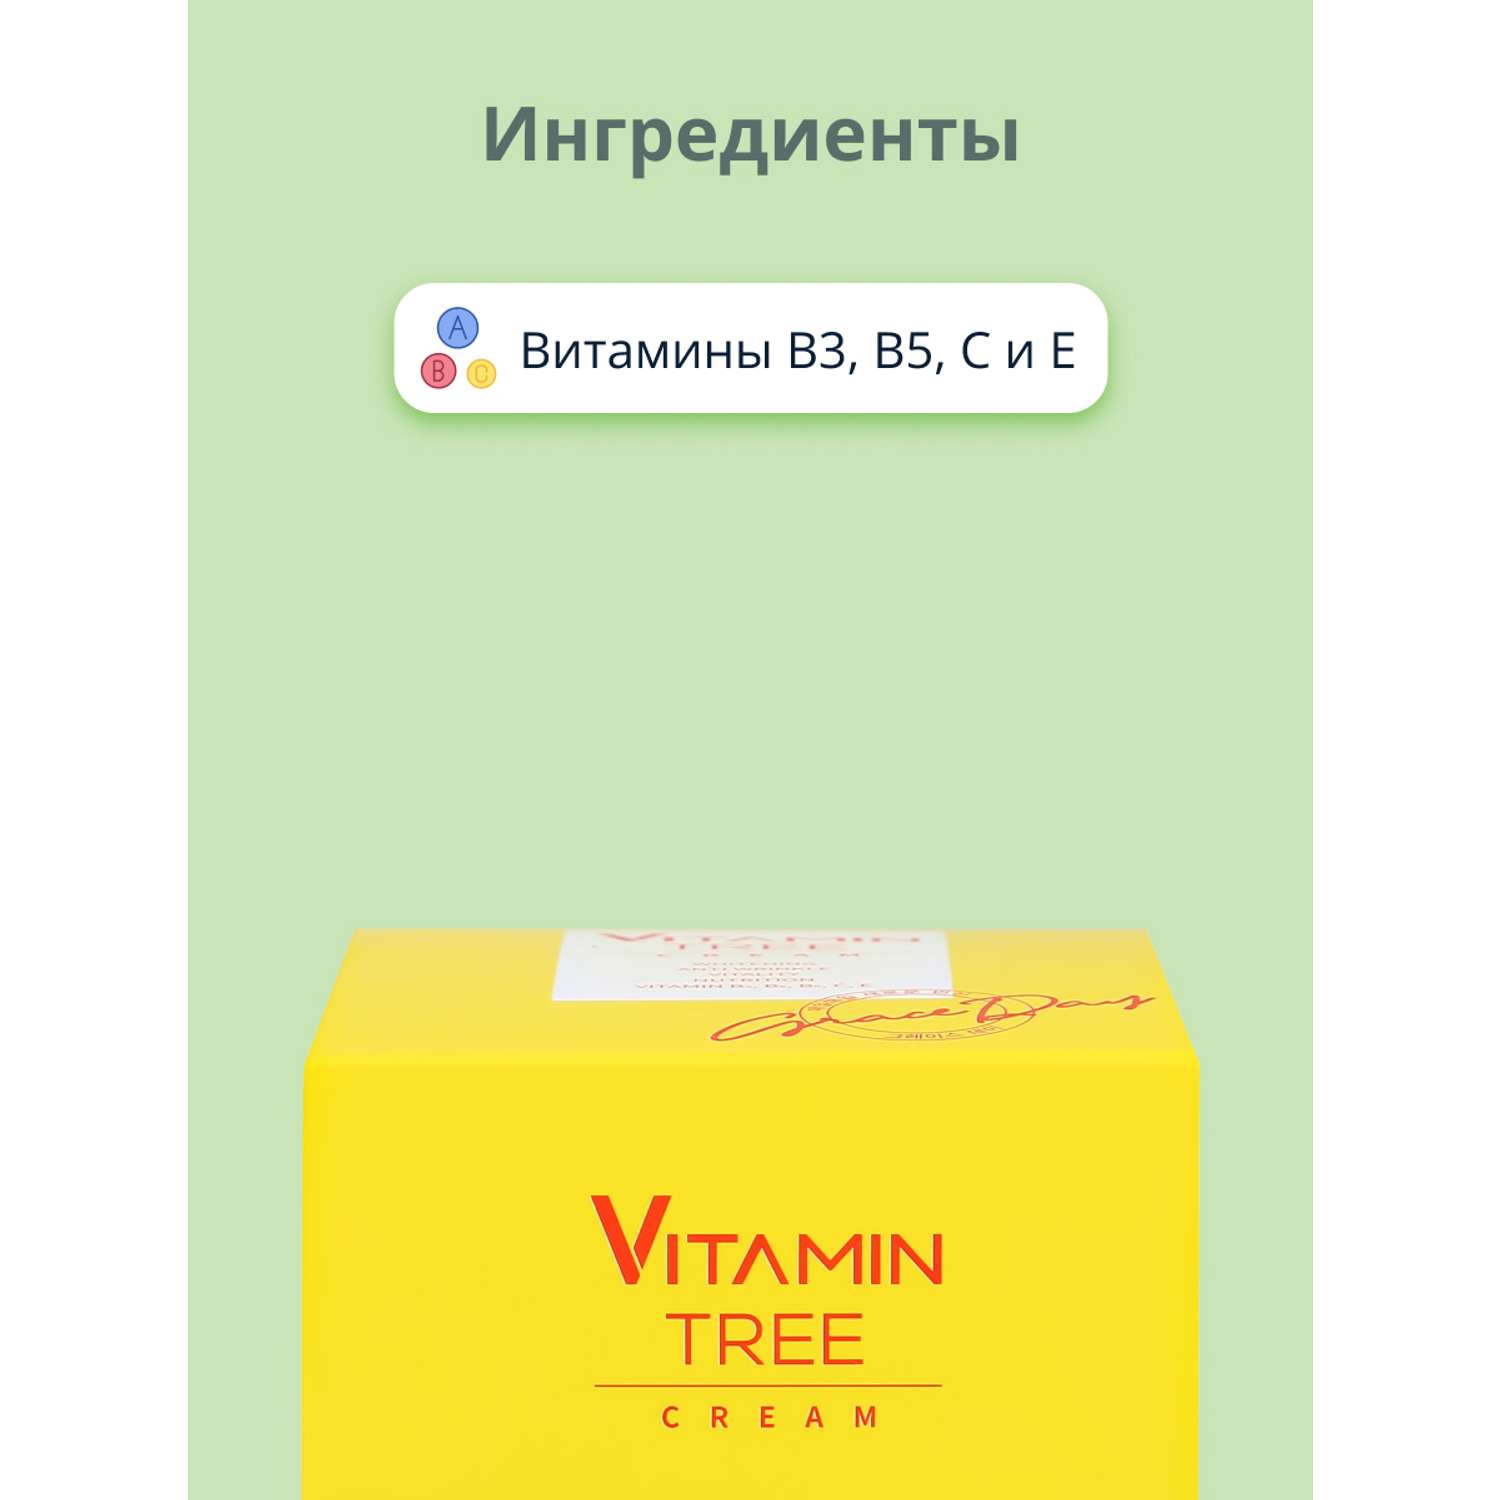 Крем для лица Grace day Vitamin tree выравнивающий тон кожи 50 мл - фото 2